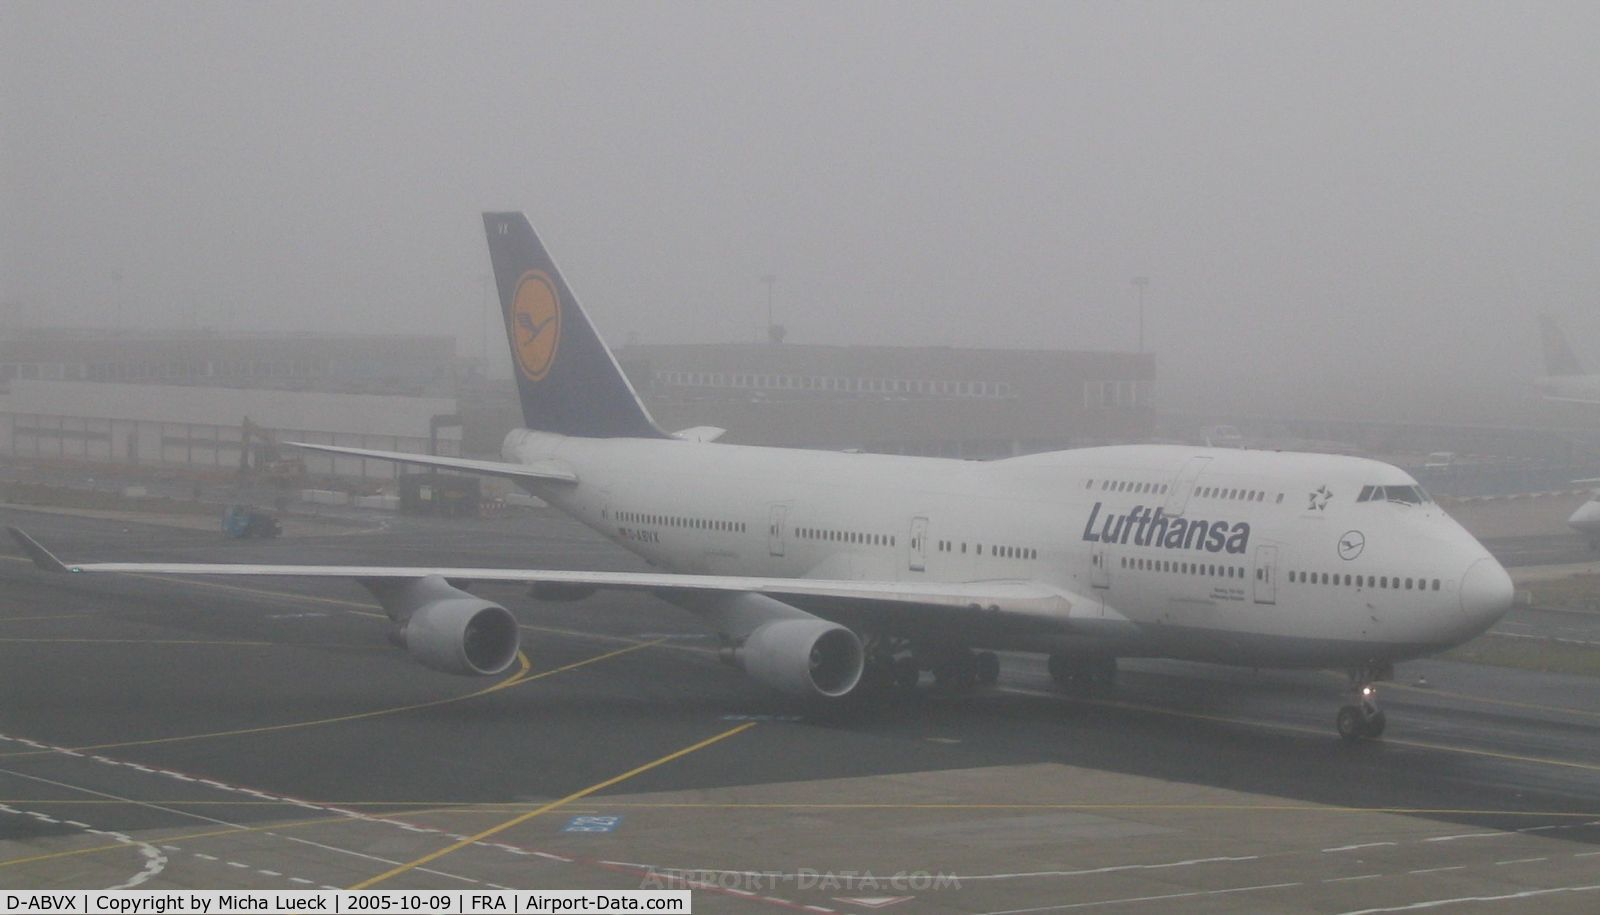 D-ABVX, 1999 Boeing 747-430 C/N 29868, A foggy day in Frankfurt/Main